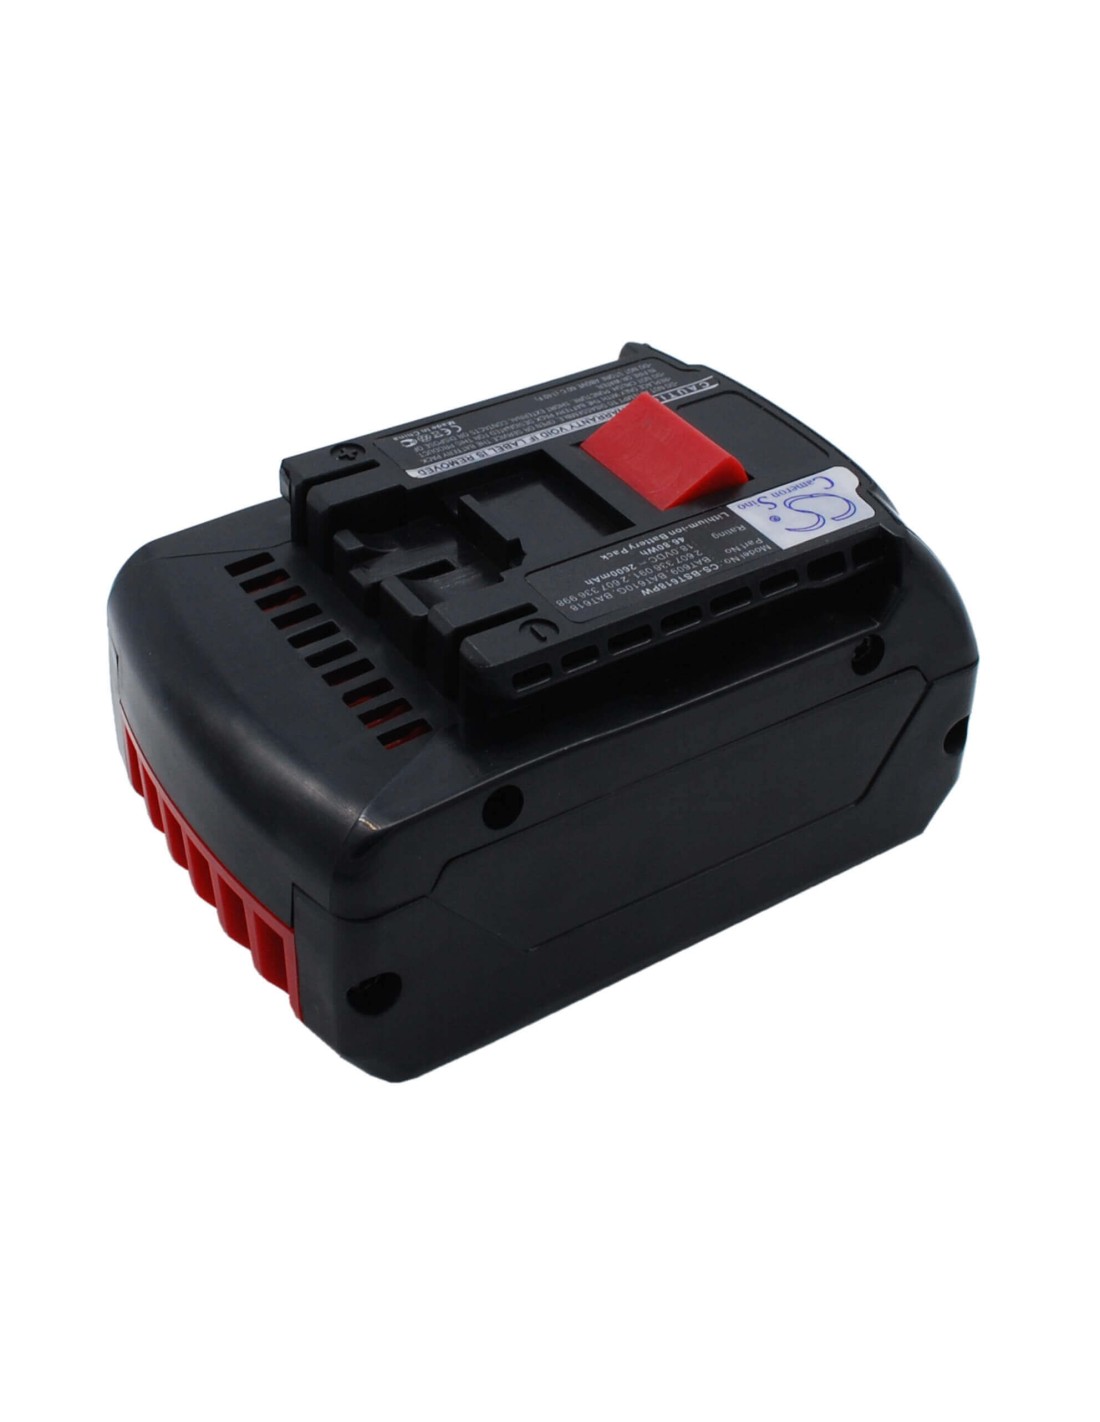 Battery for Bosch 17618, 17618-01, 25618-01 18V, 2600mAh - 46.80Wh